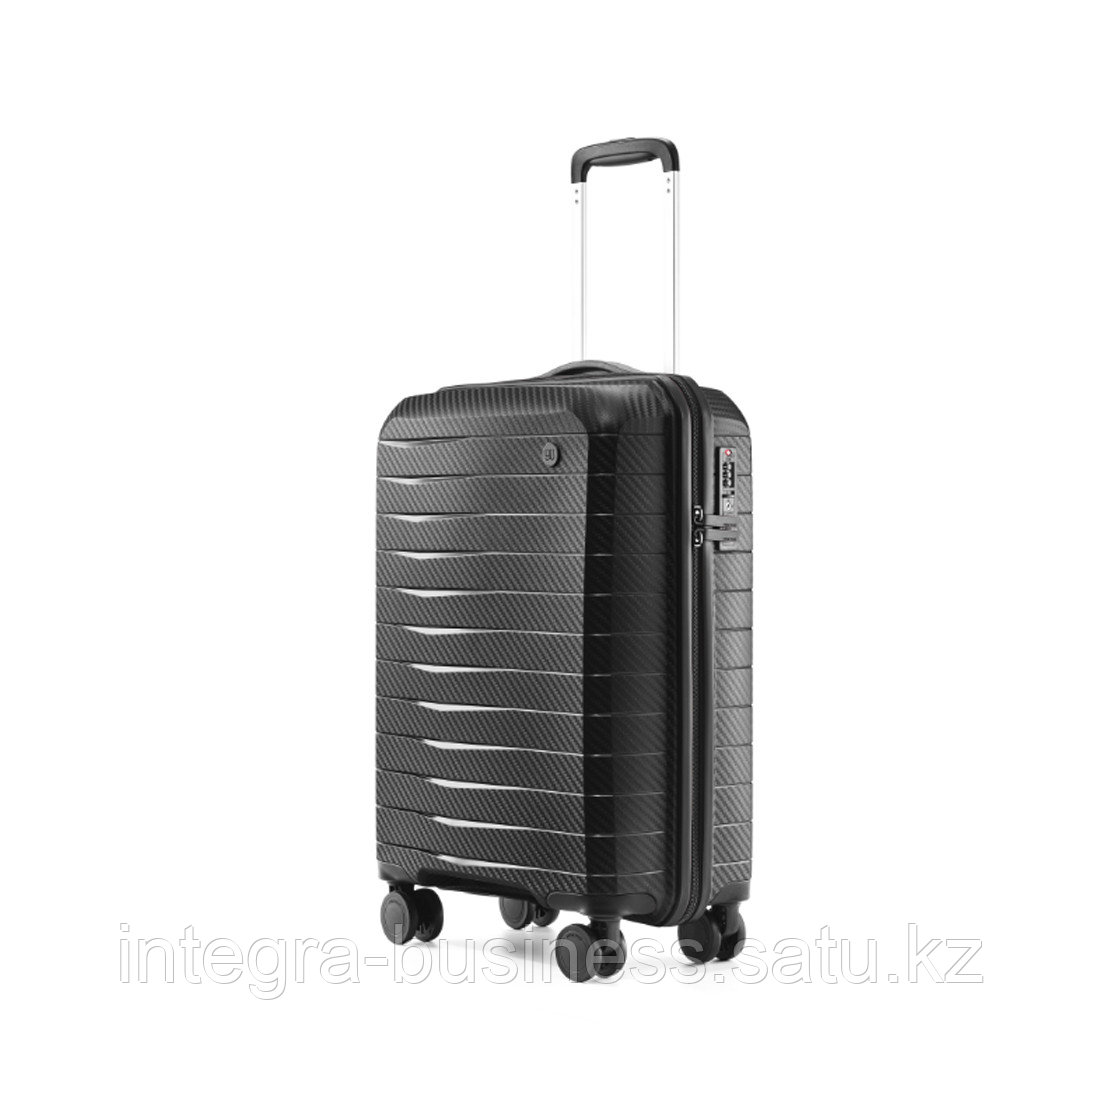 Чемодан NINETYGO Lightweight Luggage 20'' Черный, фото 1